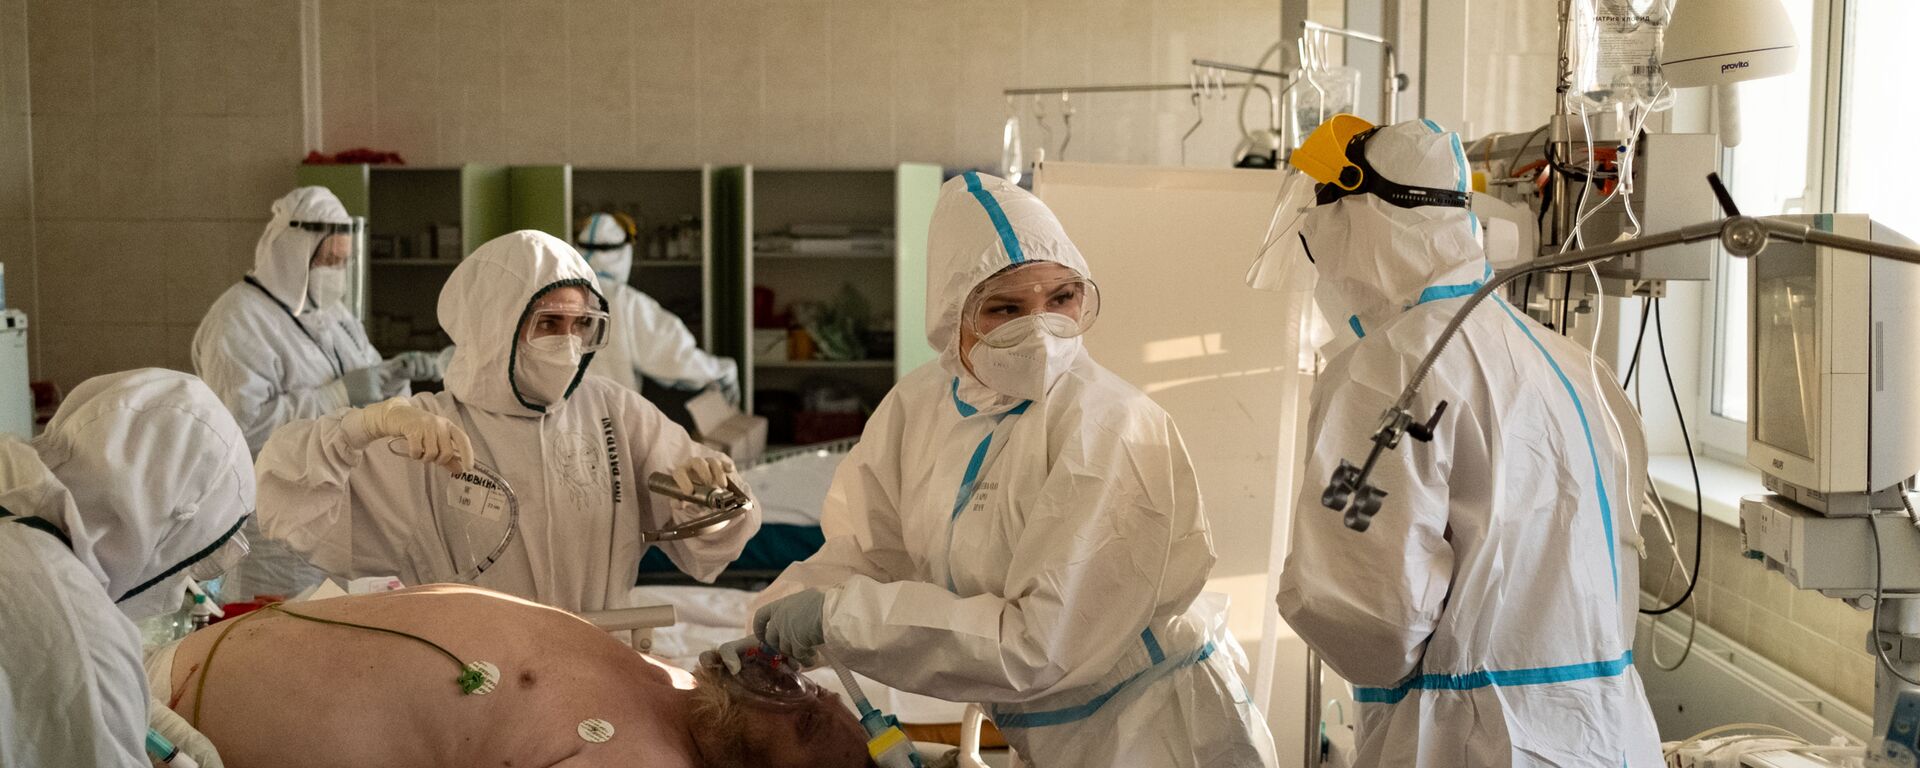 Медики лечат пациента в больнице имени Филатова, Москва - Sputnik Грузия, 1920, 08.07.2021